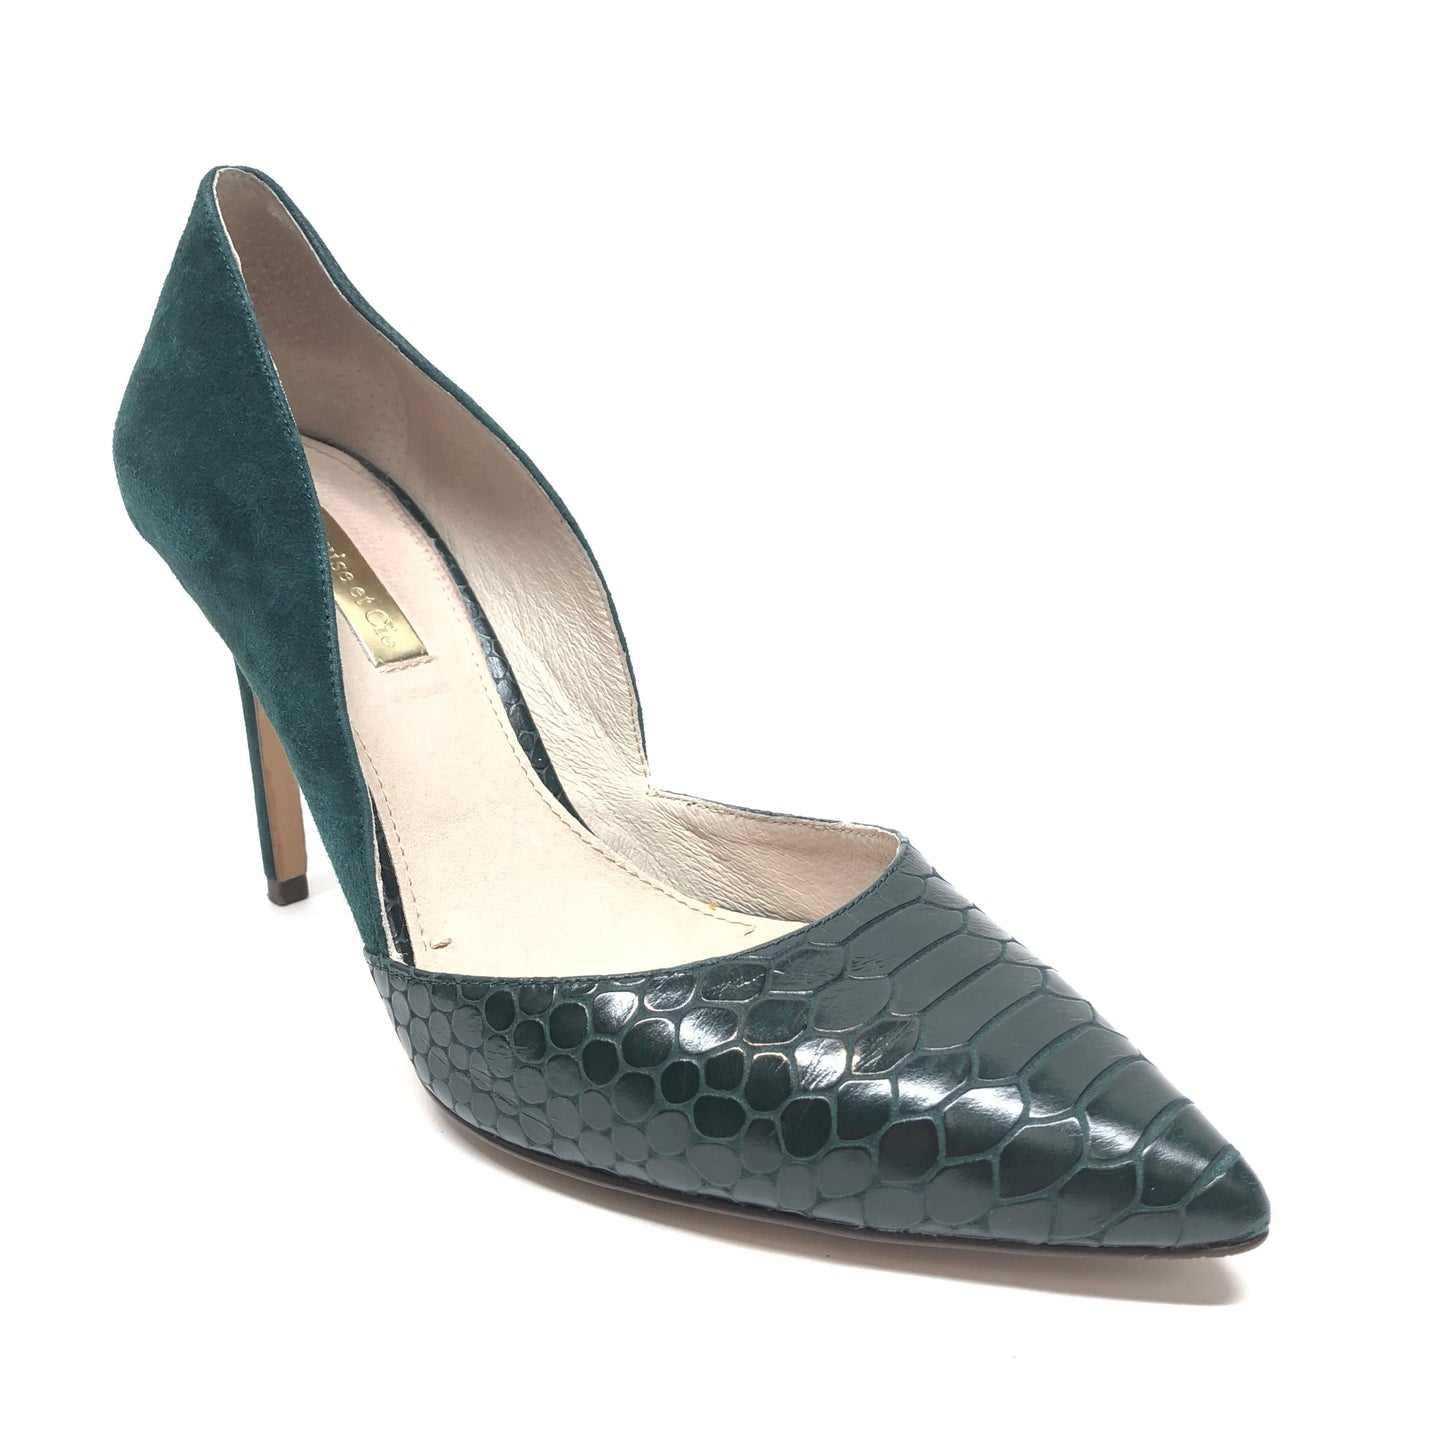 Green Shoes Heels Stiletto Louise Et Cie, Size 7.5